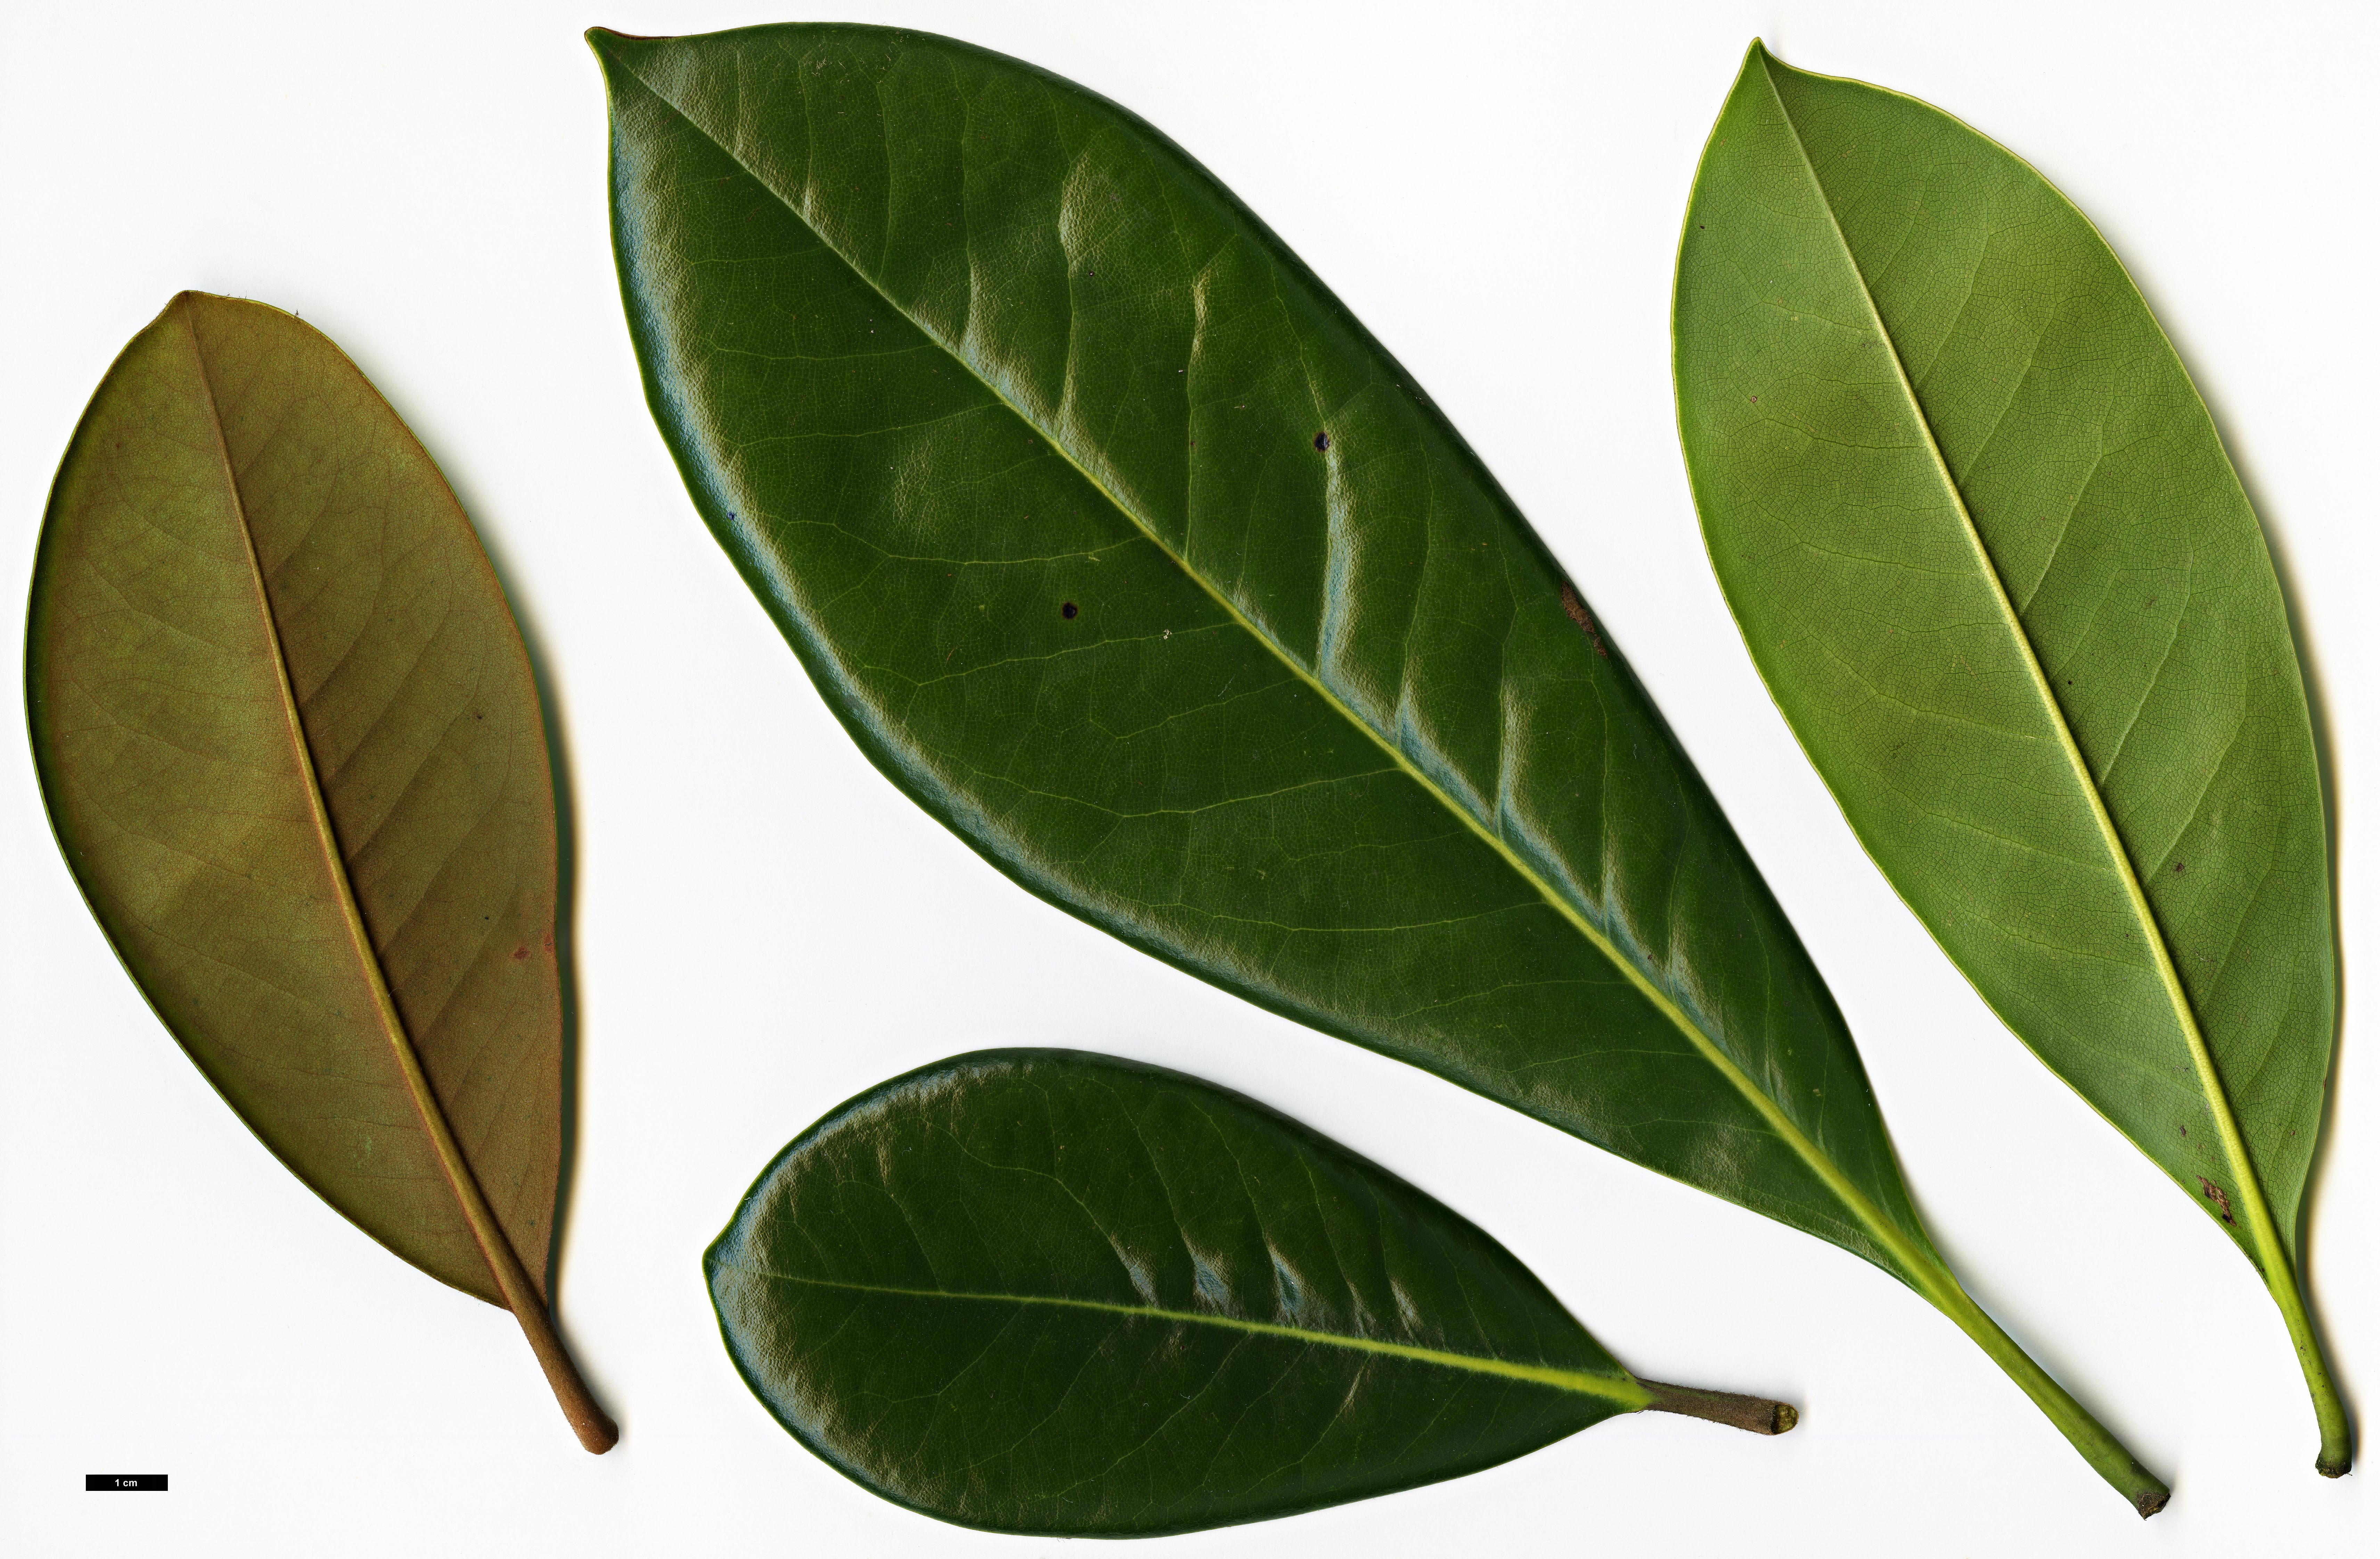 High resolution image: Family: Magnoliaceae - Genus: Magnolia - Taxon: grandiflora